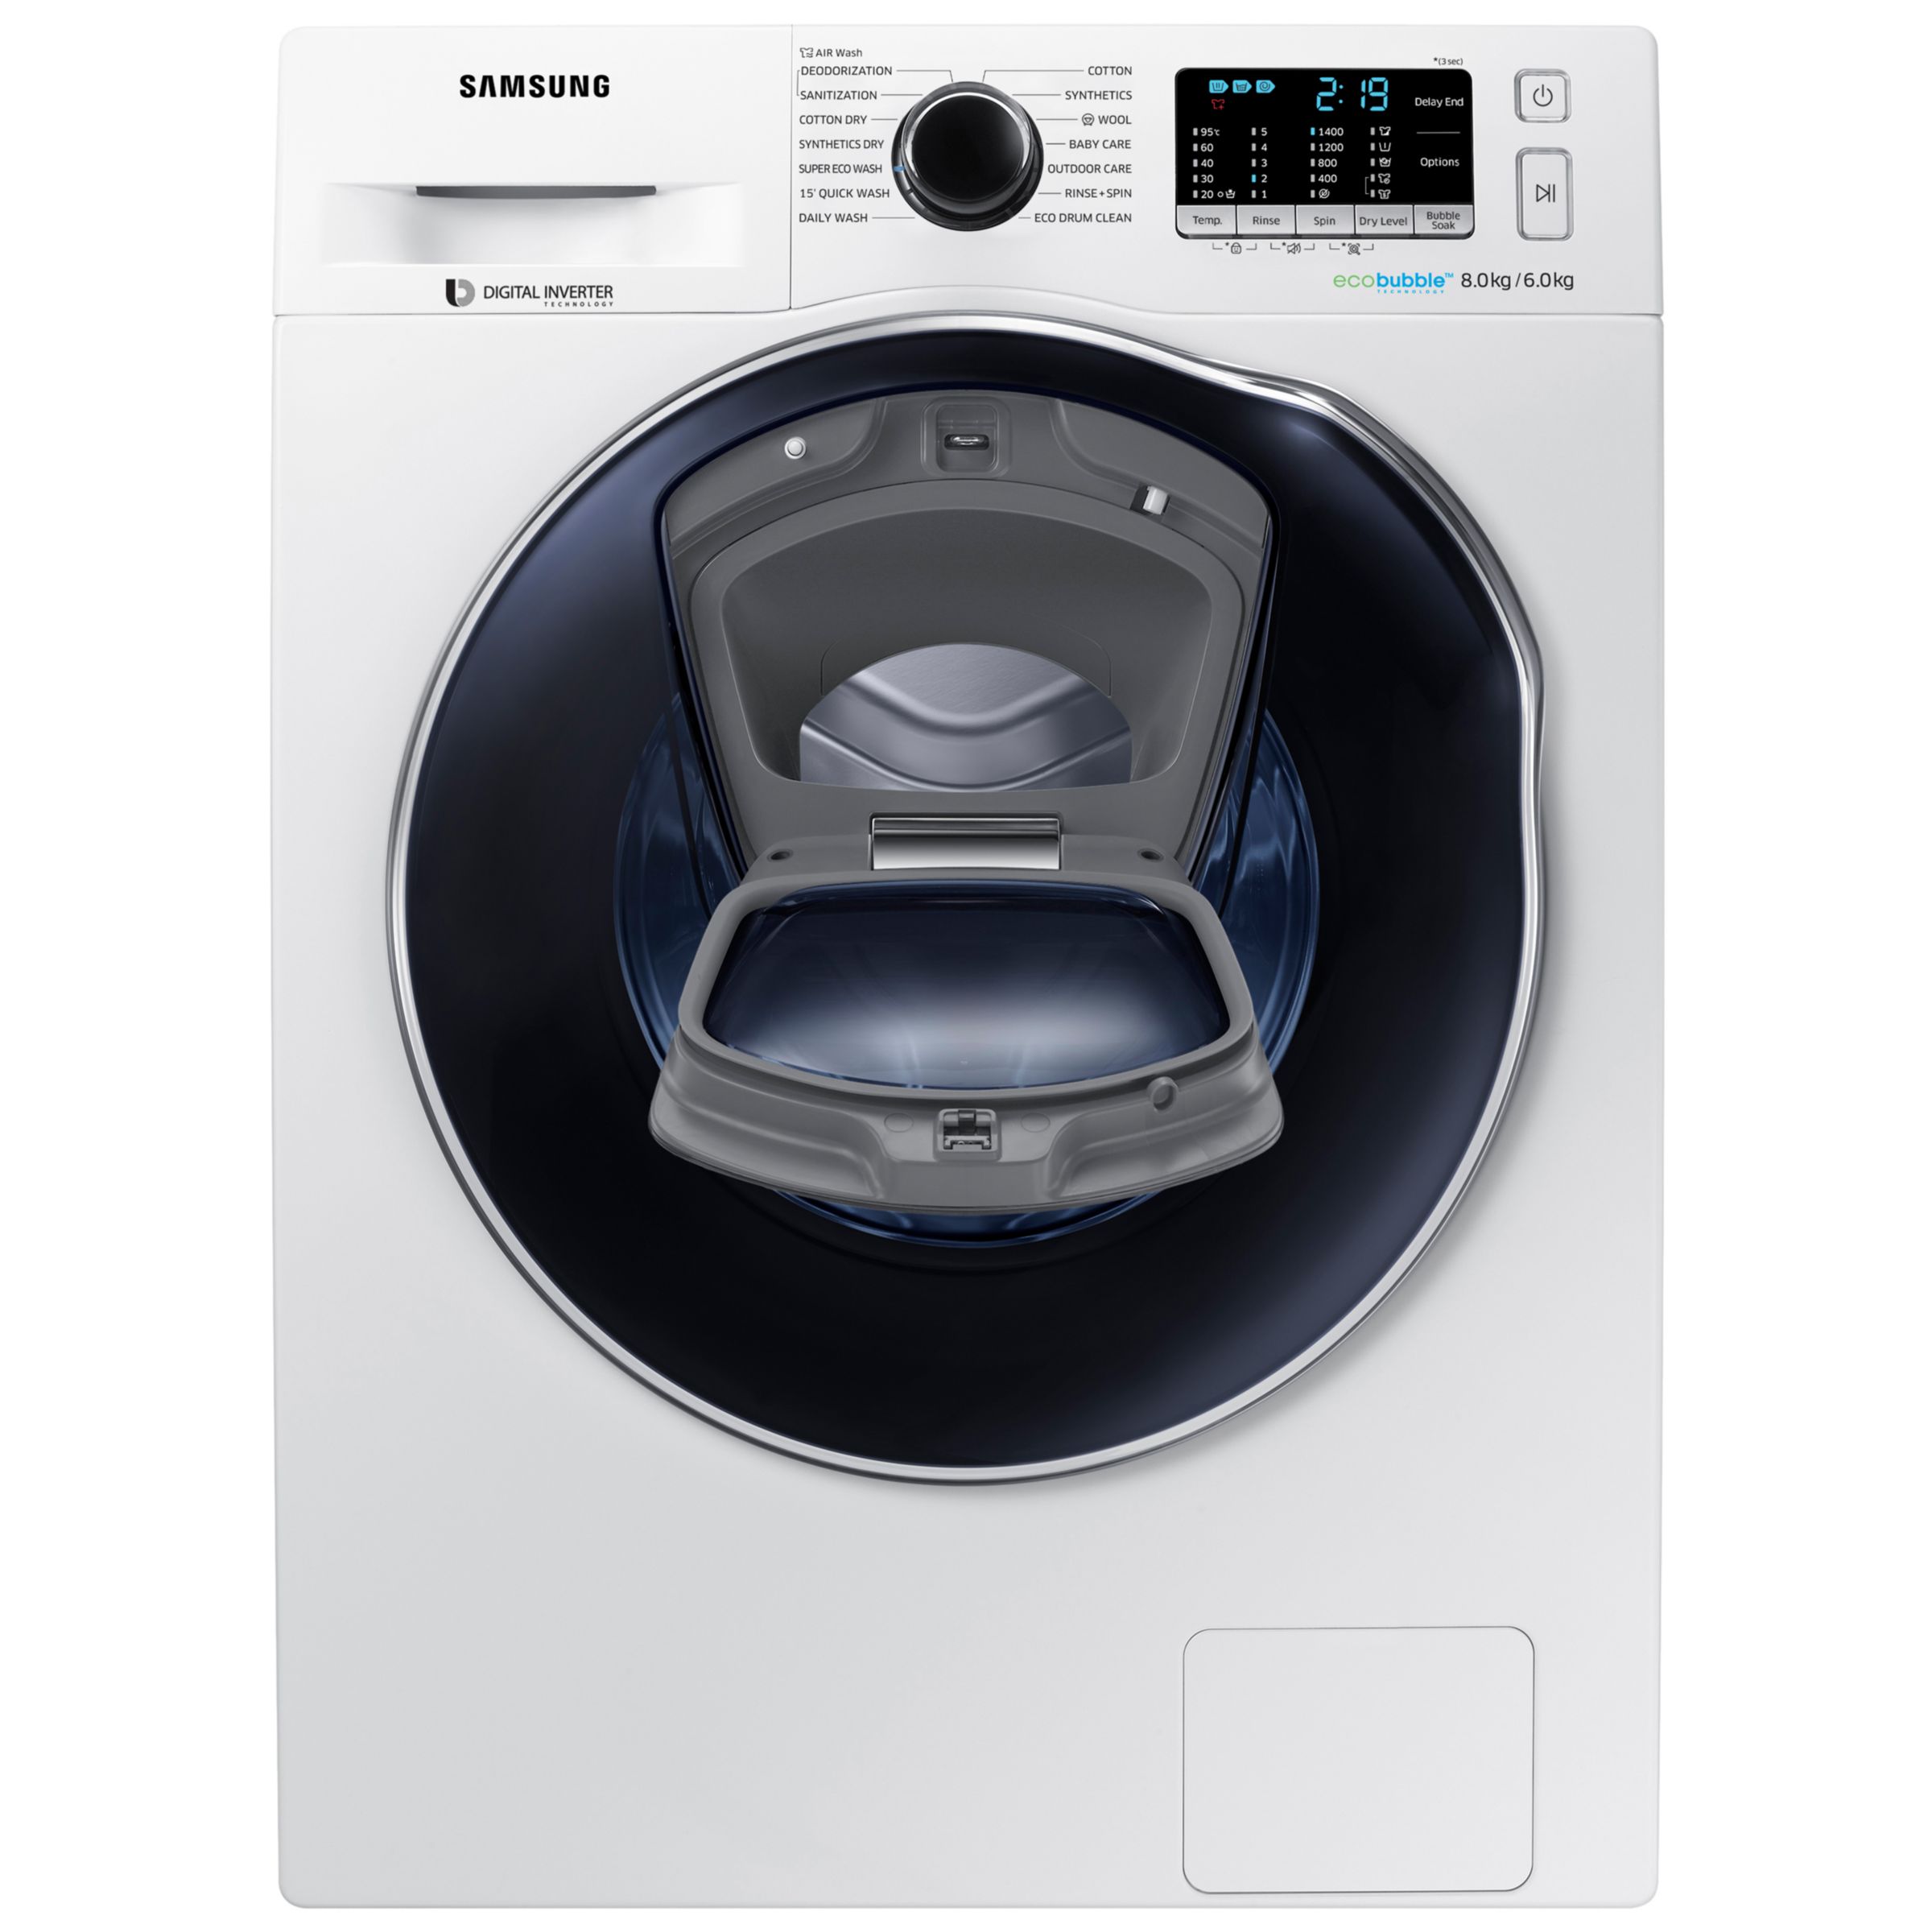 Til Ni Dårlig faktor udvikling af Samsung AddWash WD80K5B10OW/EU Freestanding Washer Dryer, 8kg Wash/6kg Dry  Load, B Energy Rating, 1400rpm Spin, White